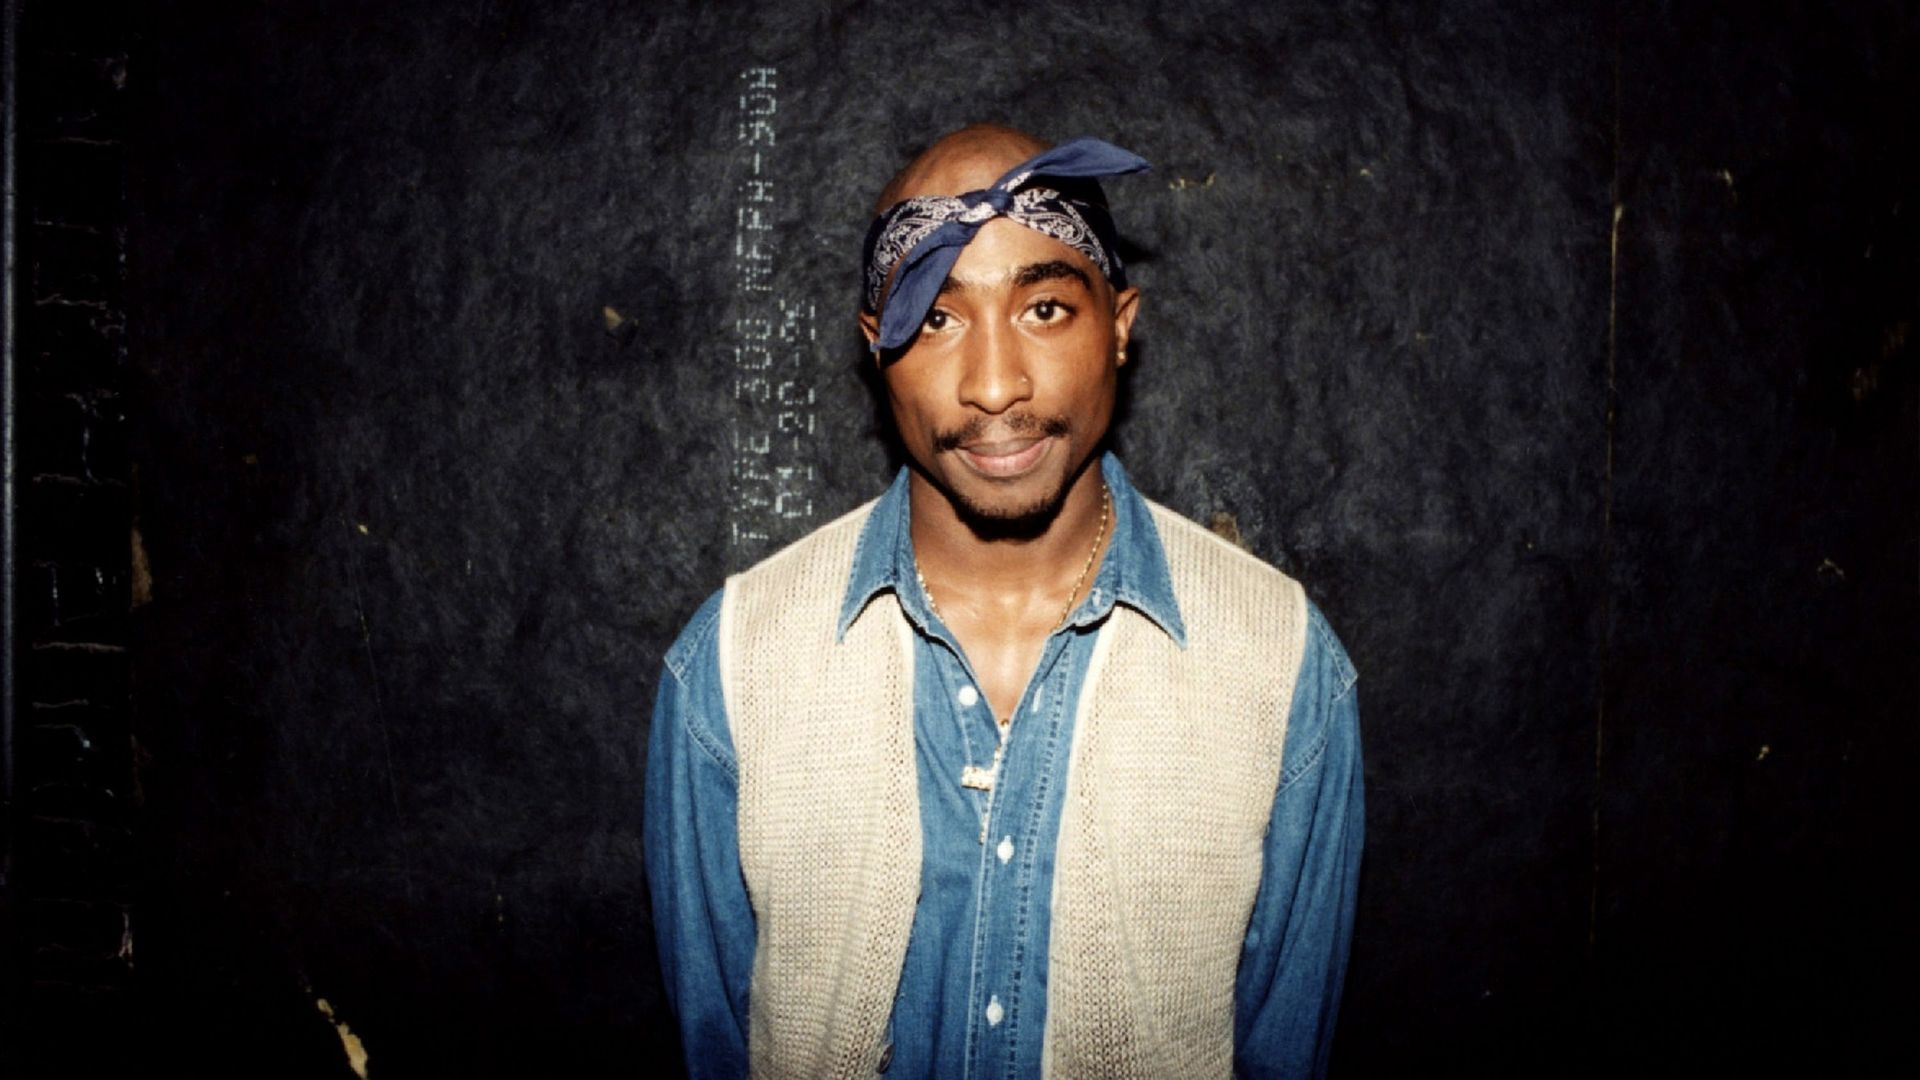 Photographie de Tupac Shakur qui recevra son étoile sur le Hollywood Walk of Fame, 26 ans après sa mort.